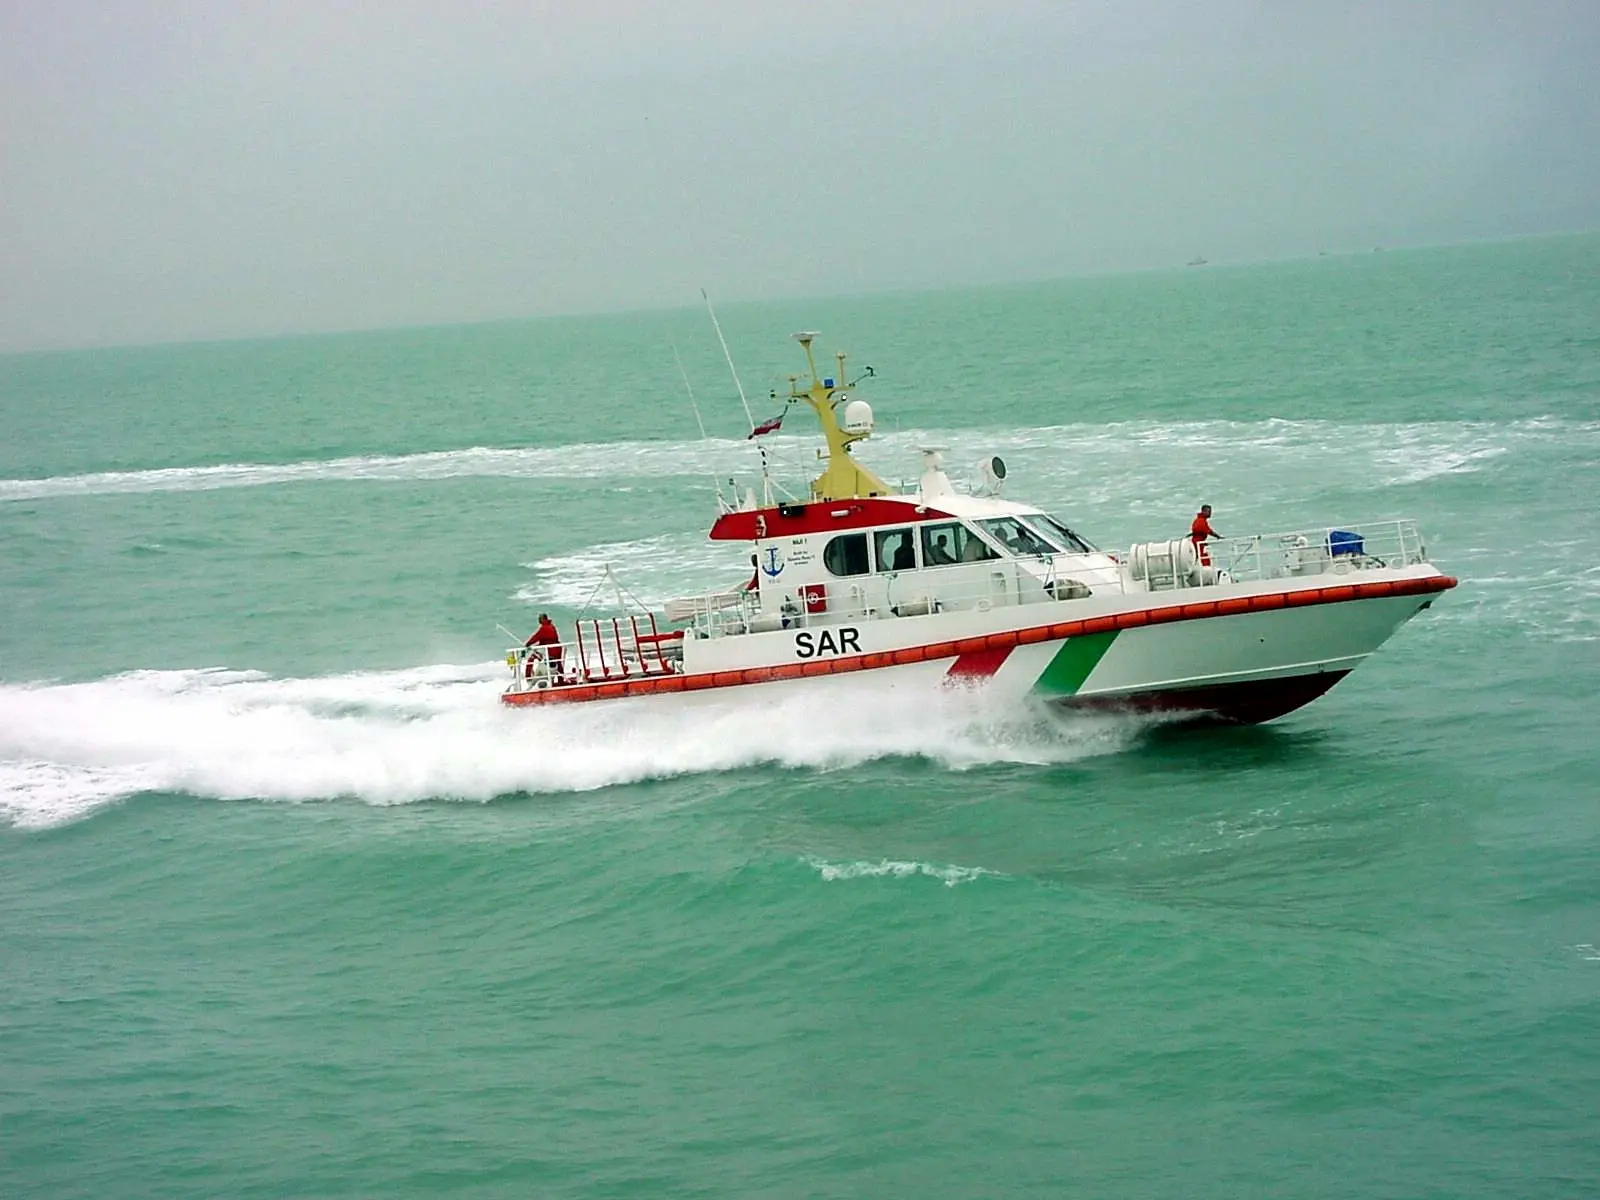 عملیات امداد رسانی به خدمه قایق صیادی